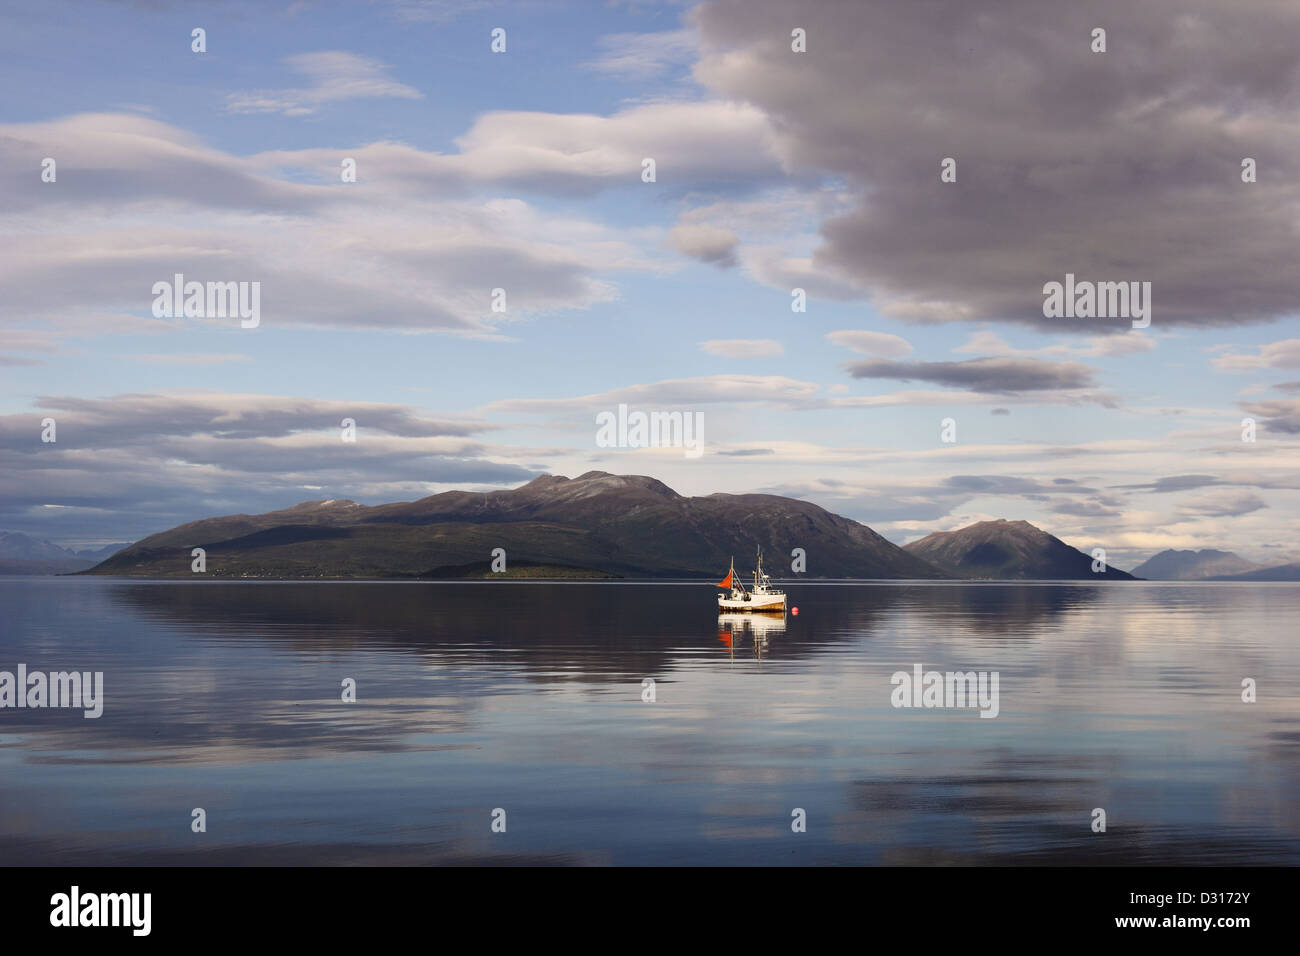 Scène tranquille dans les fjords norvégiens du nord - un seul bateau de pêche dans les eaux calmes. Banque D'Images